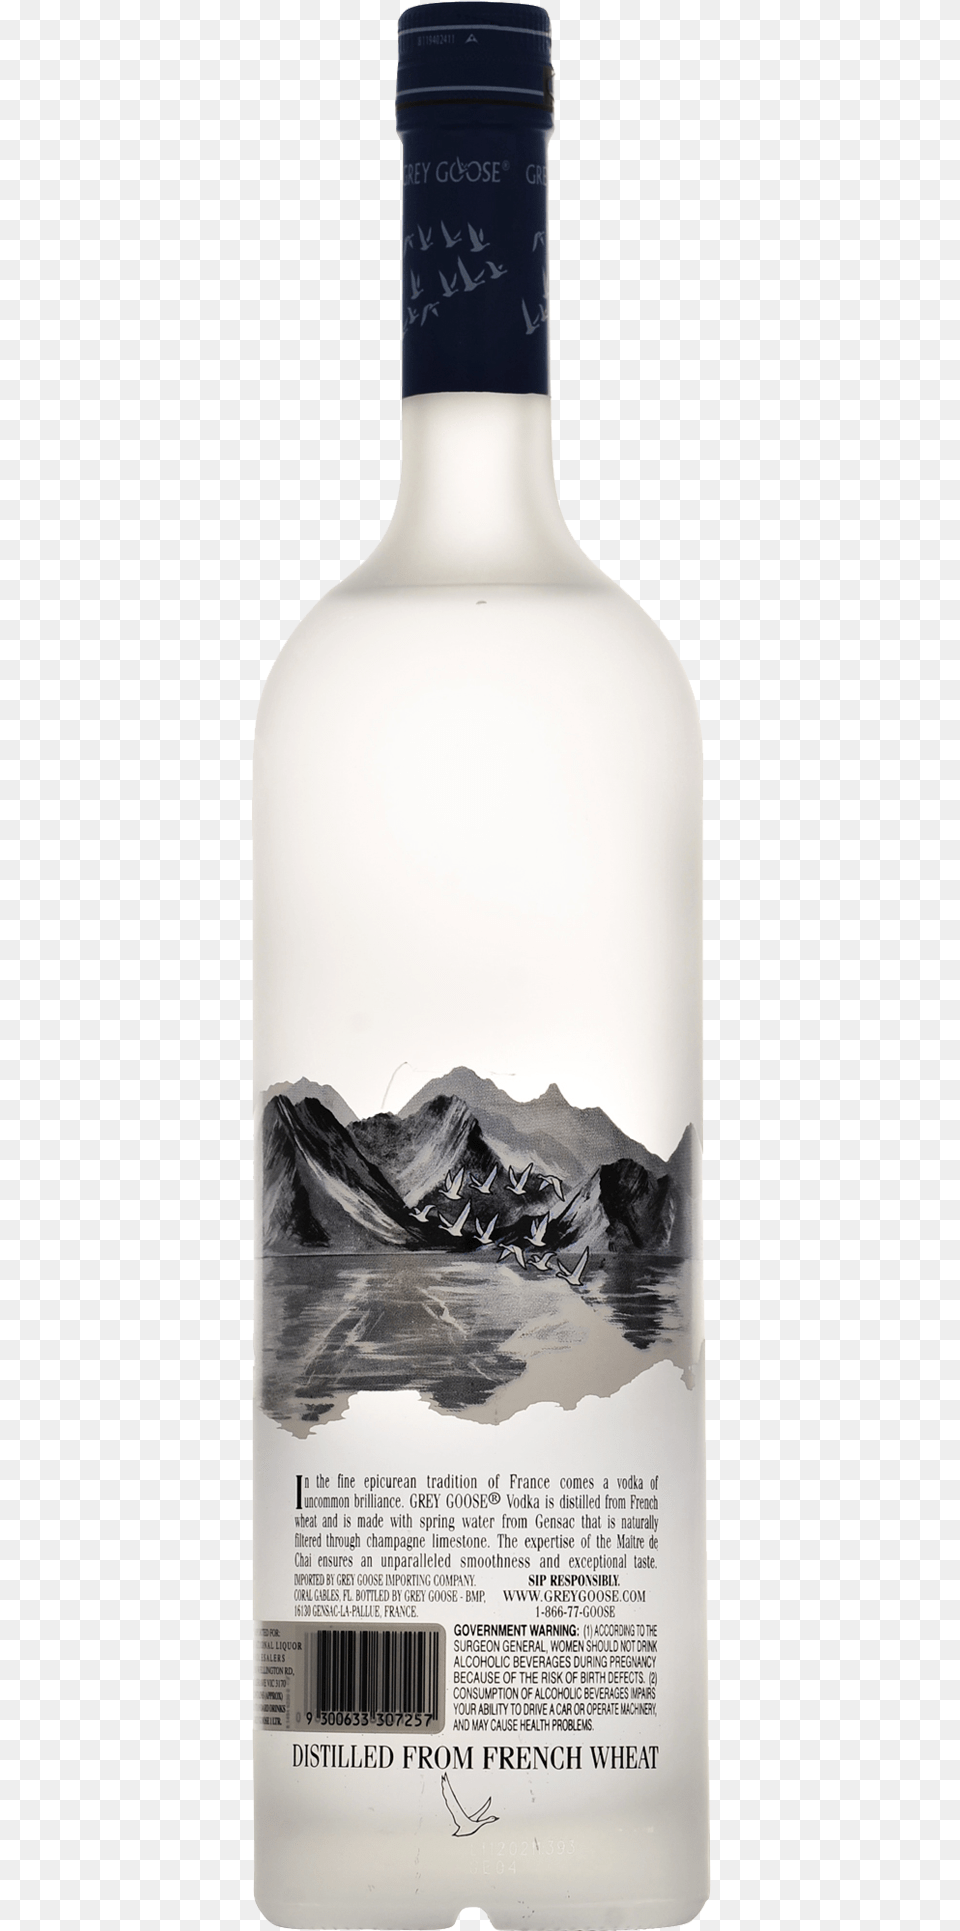 Grey Goose Vodka 1l Bottle Grey Goose Original Vodka, Alcohol, Beverage, Gin, Liquor Free Png Download